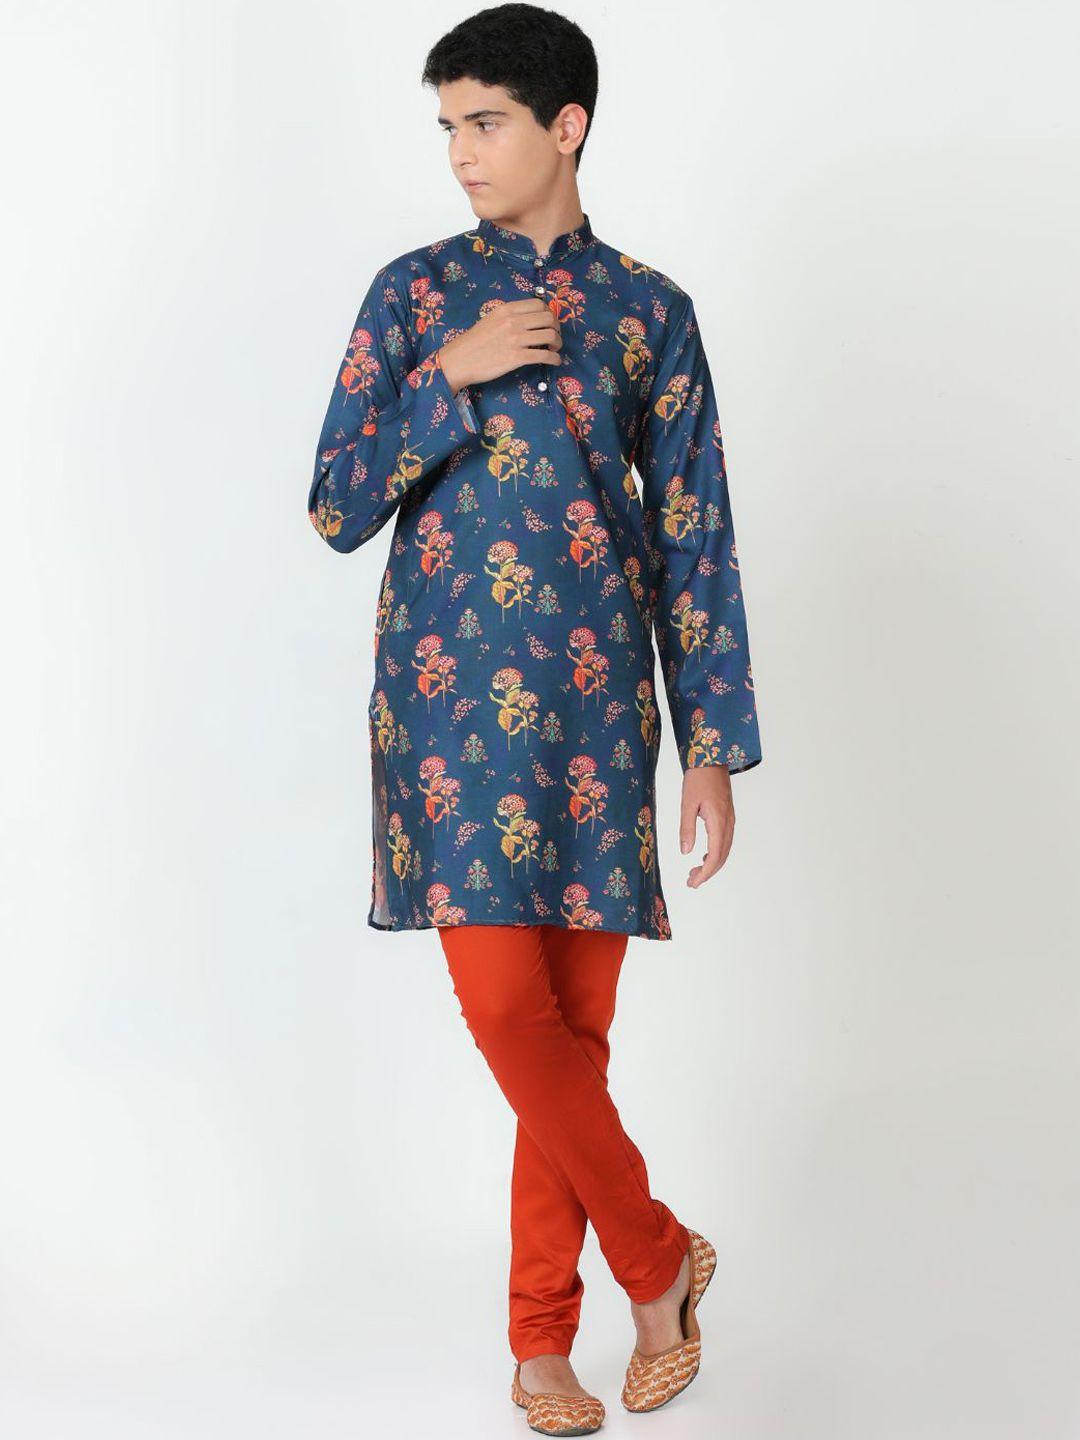 flavido-boys-blue-floral-printed-regular-linen-kurti-with-pyjamas